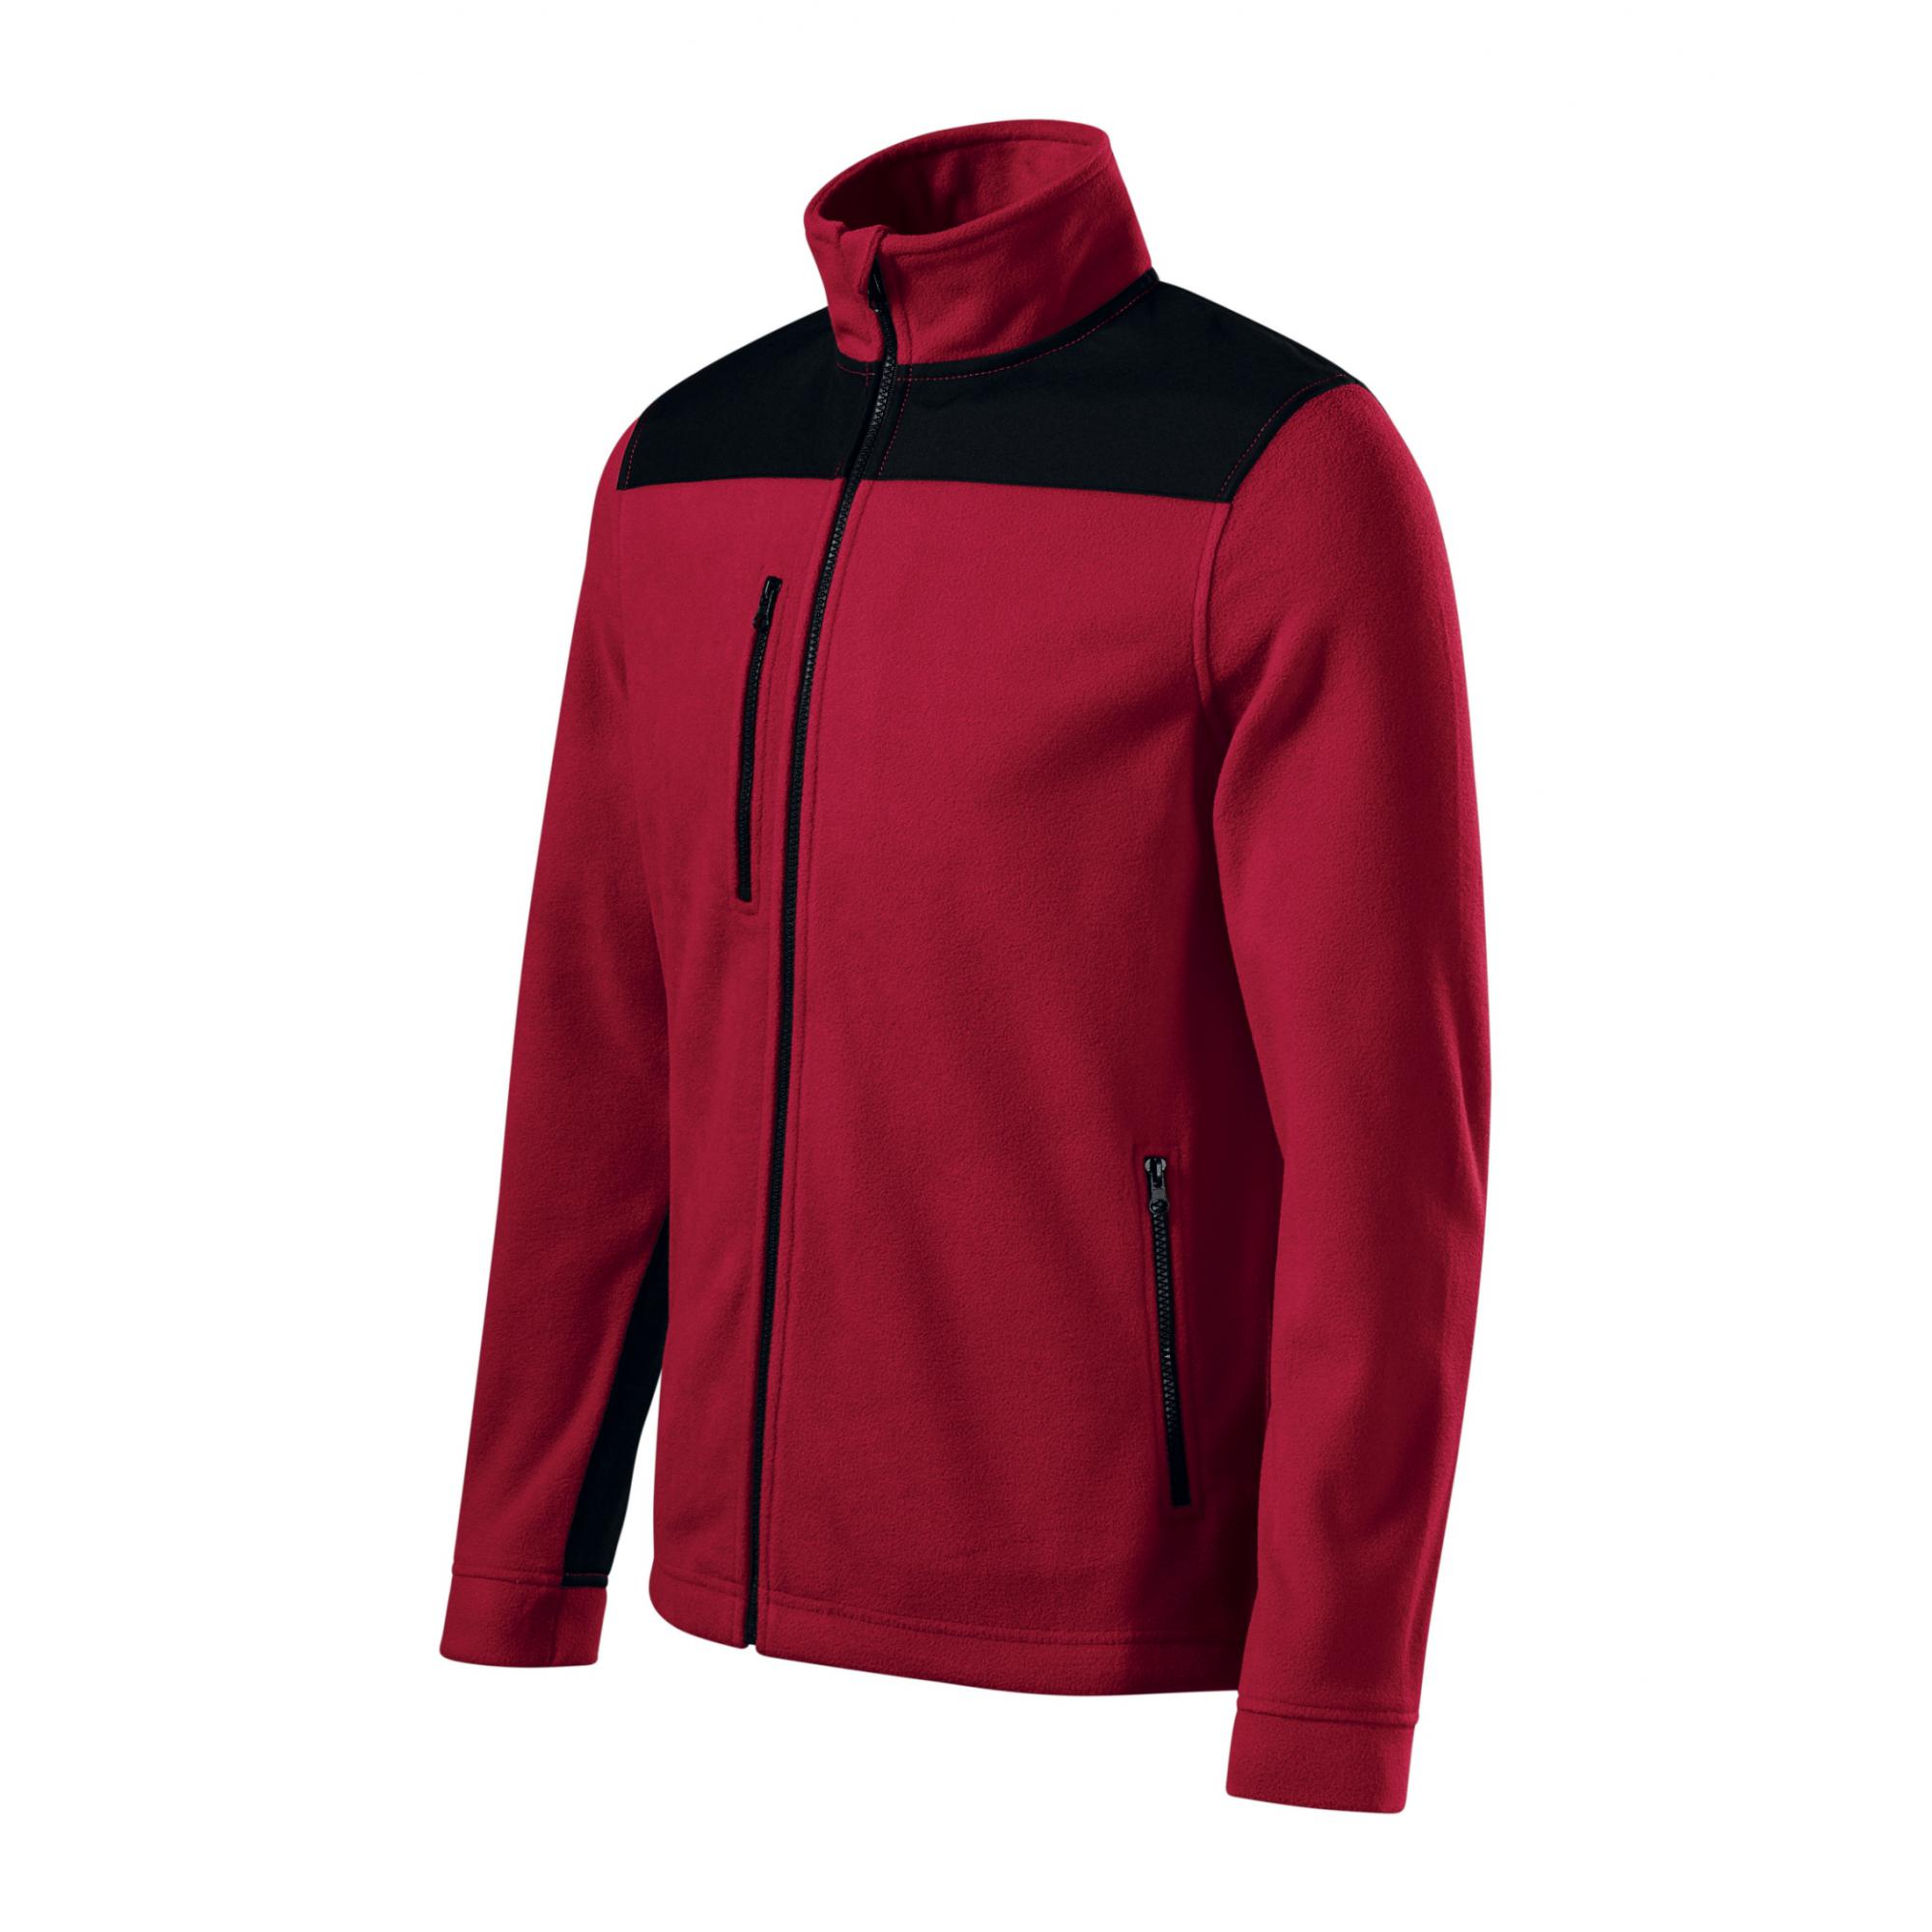 Jachetă fleece unisex Effect 530 Roșu marlboro